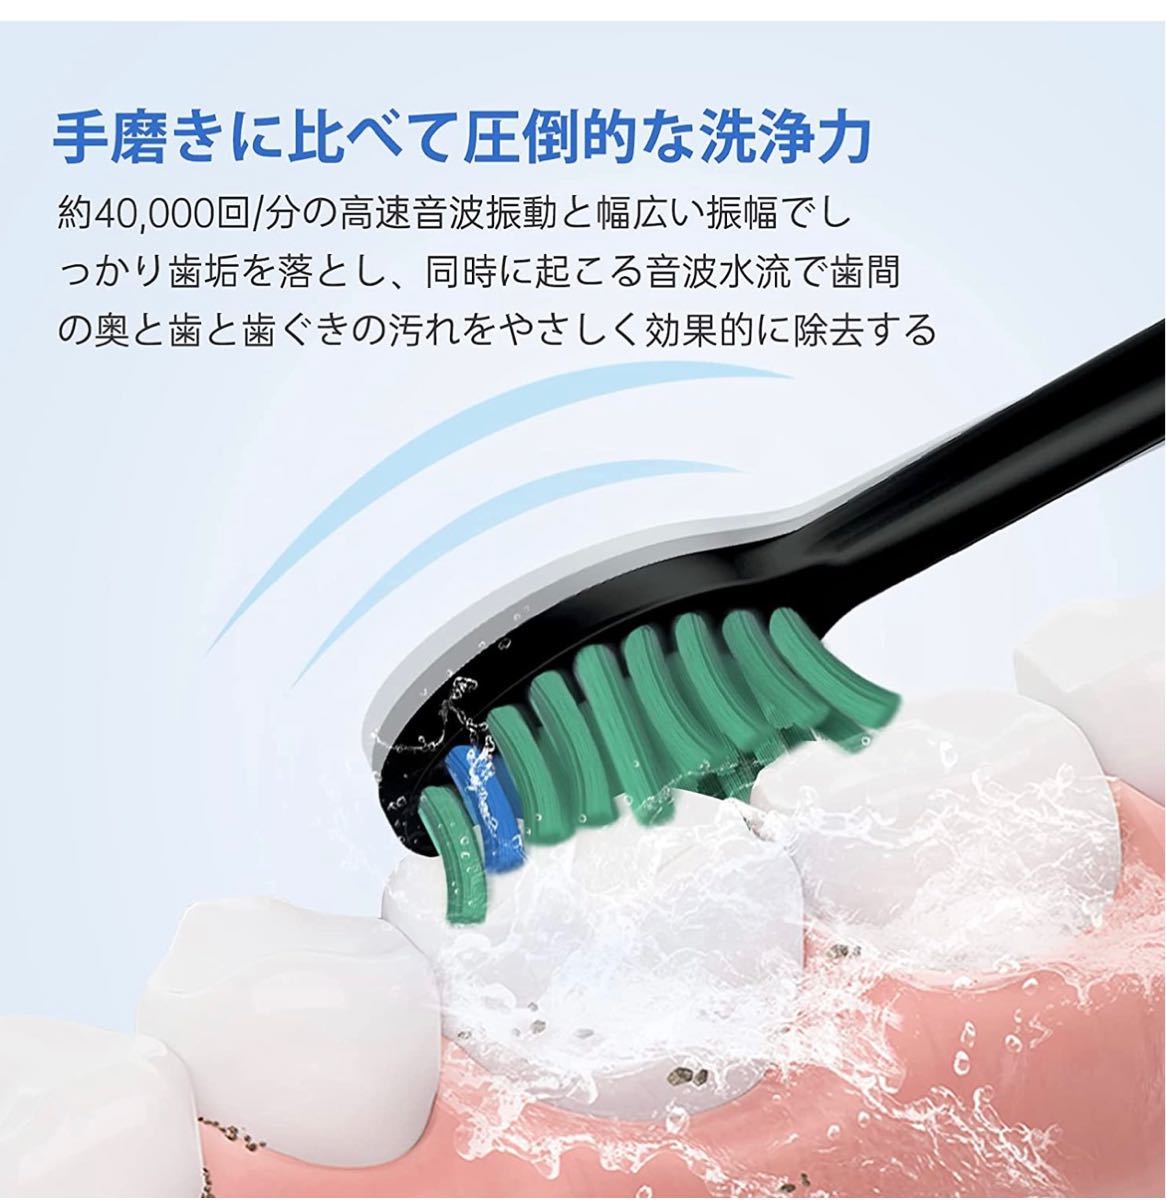 電動歯ブラシ ソニック IPX7防水 替えブラシ5本